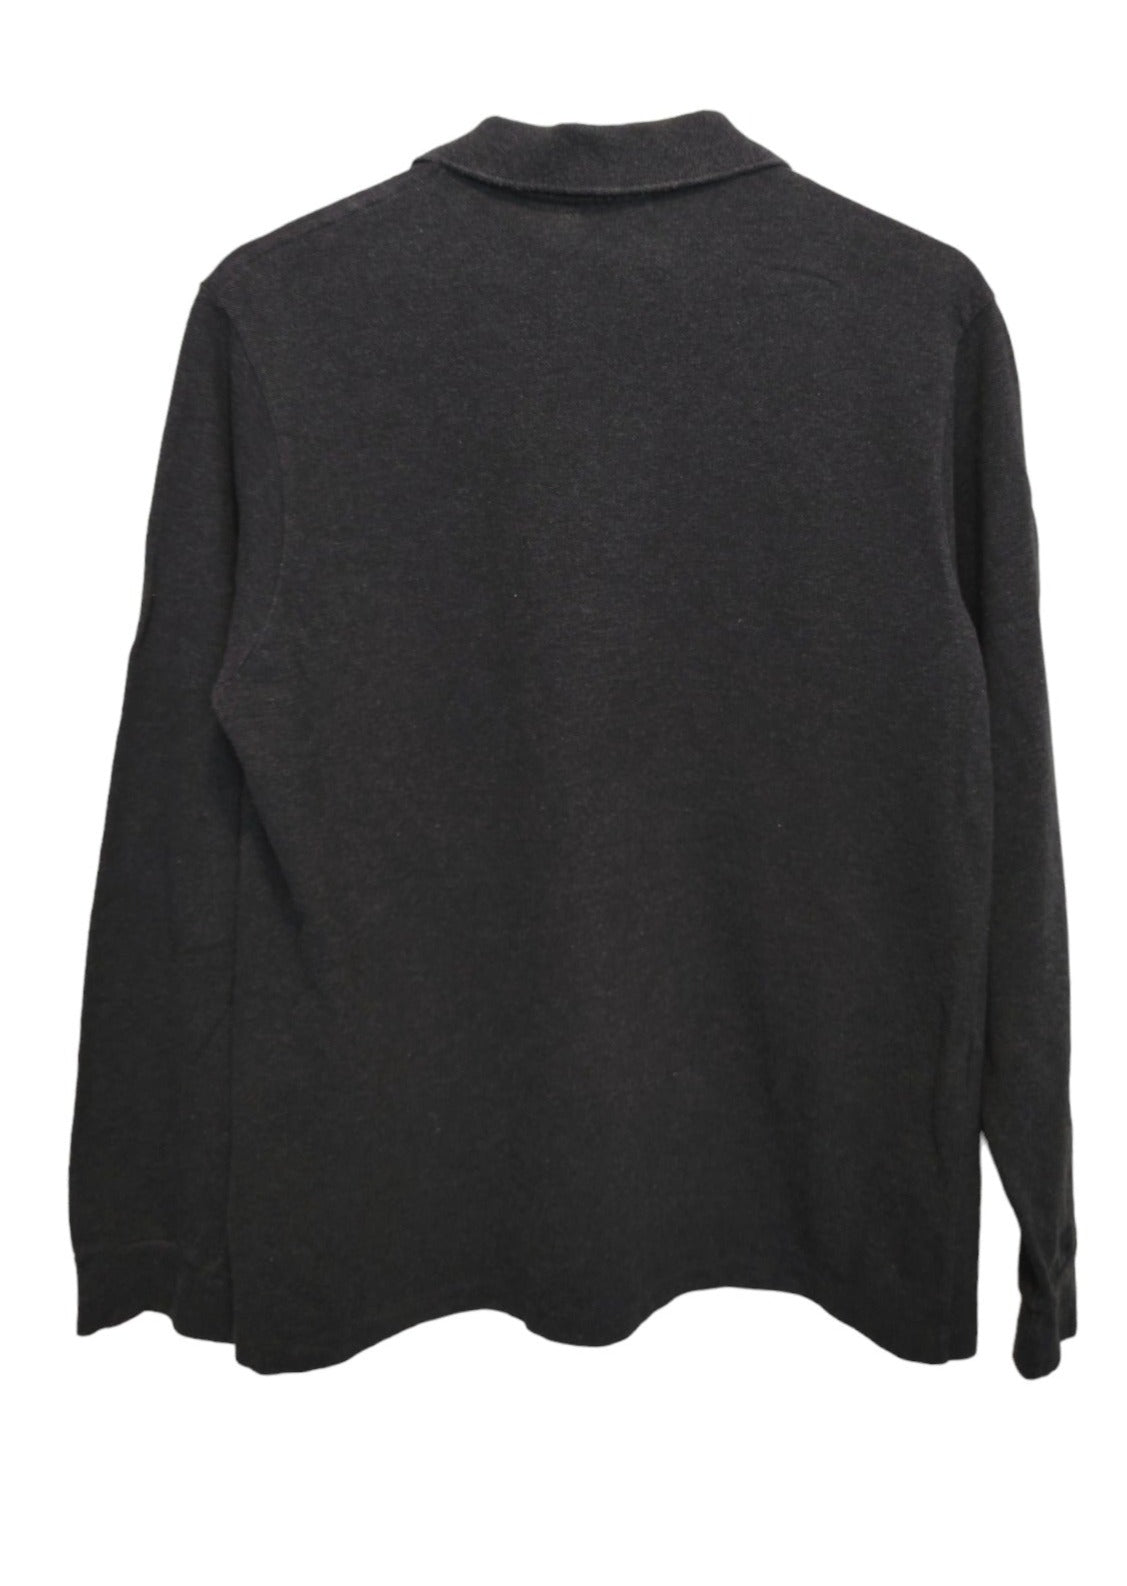 Top Branded, Ανδρική Μπλούζα σε Σκούρο Γκρι χρώμα (Medium)